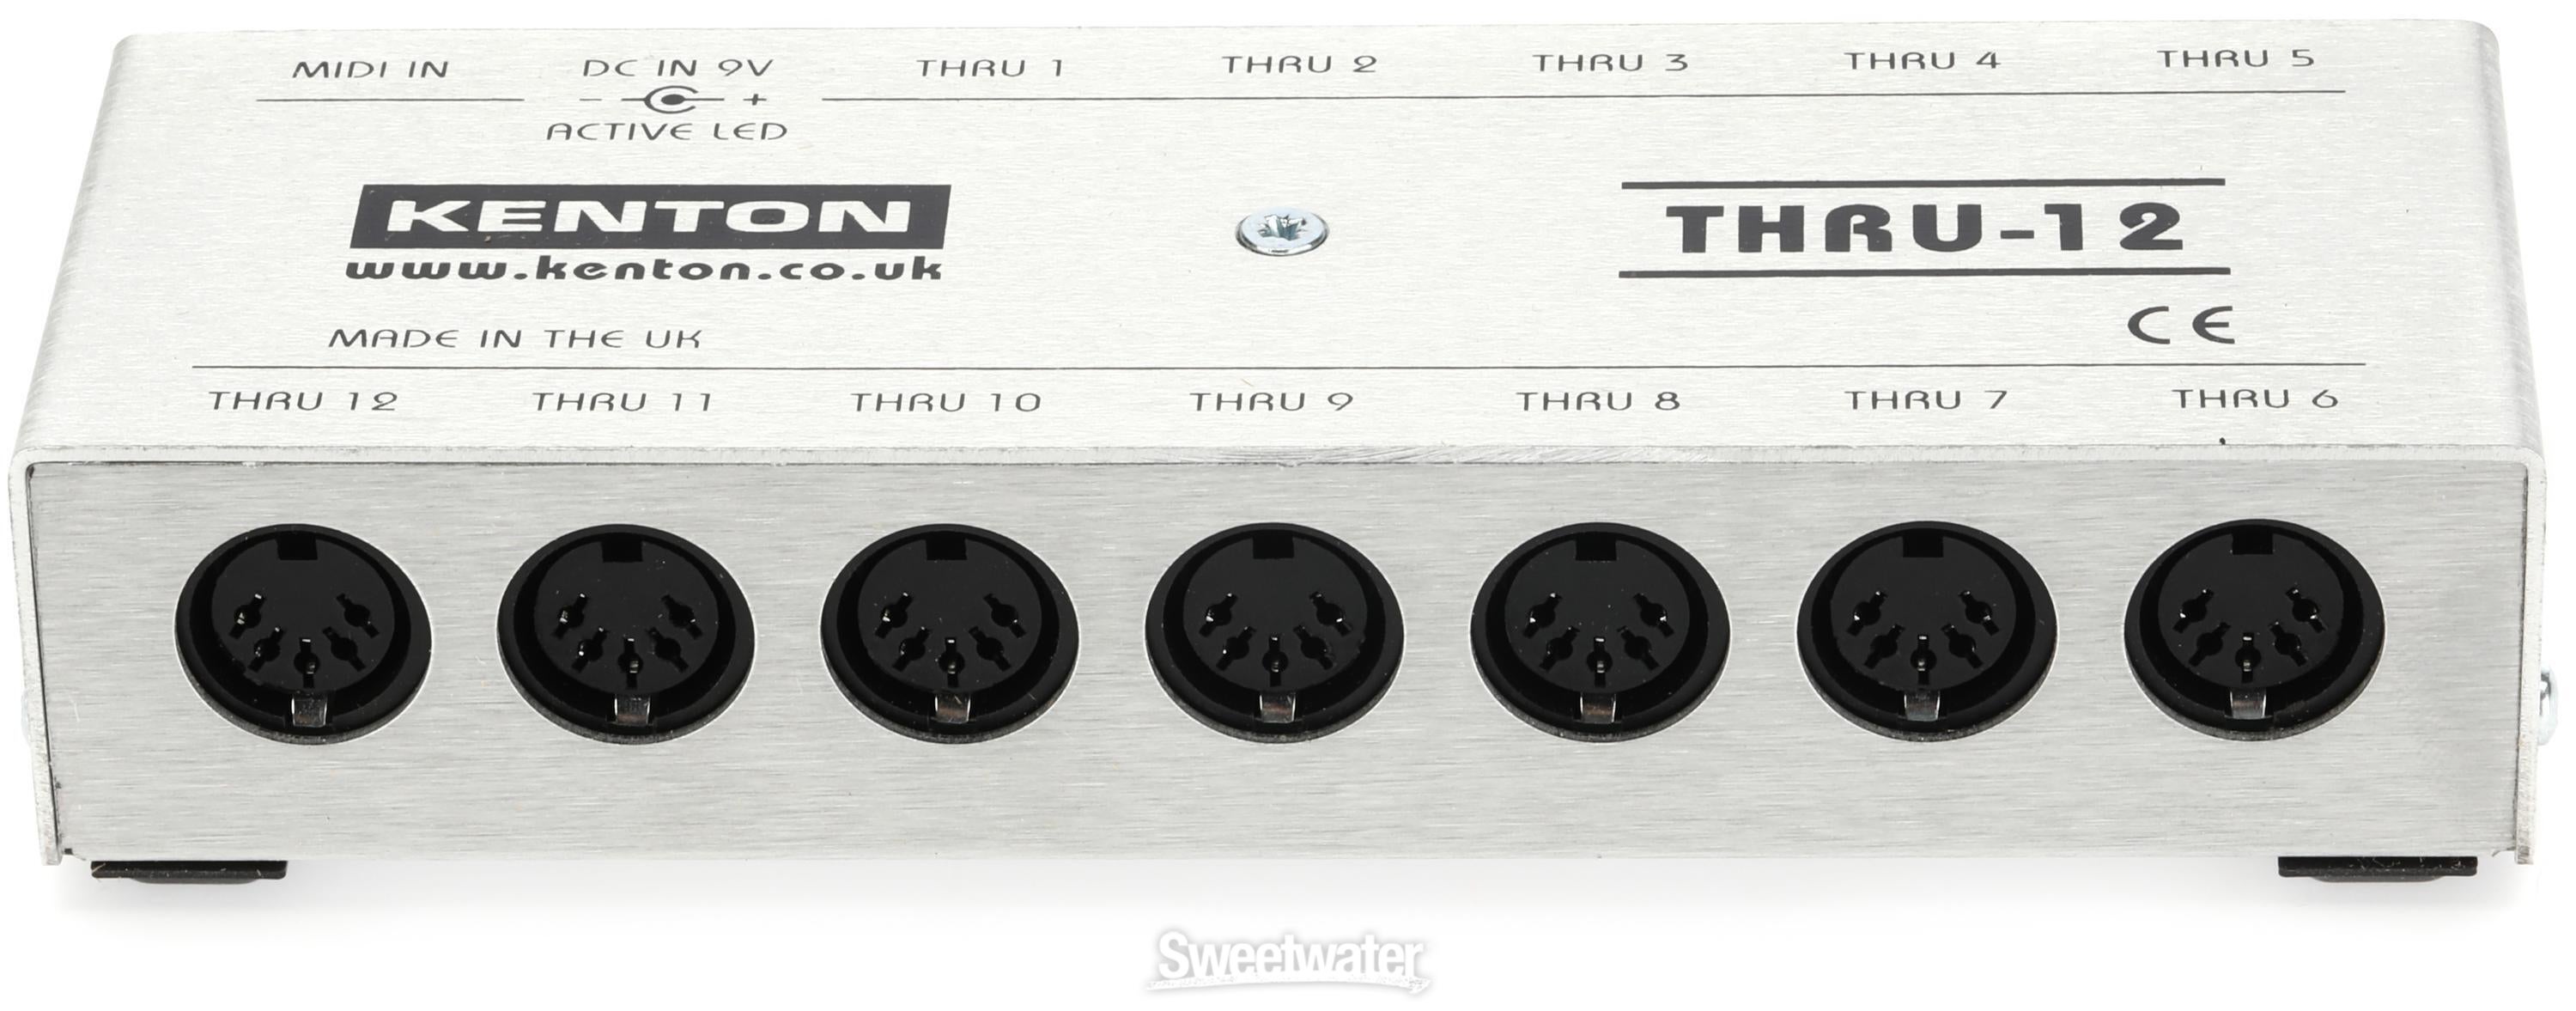 Kenton Thru-12 MIDI Thru Box | Sweetwater